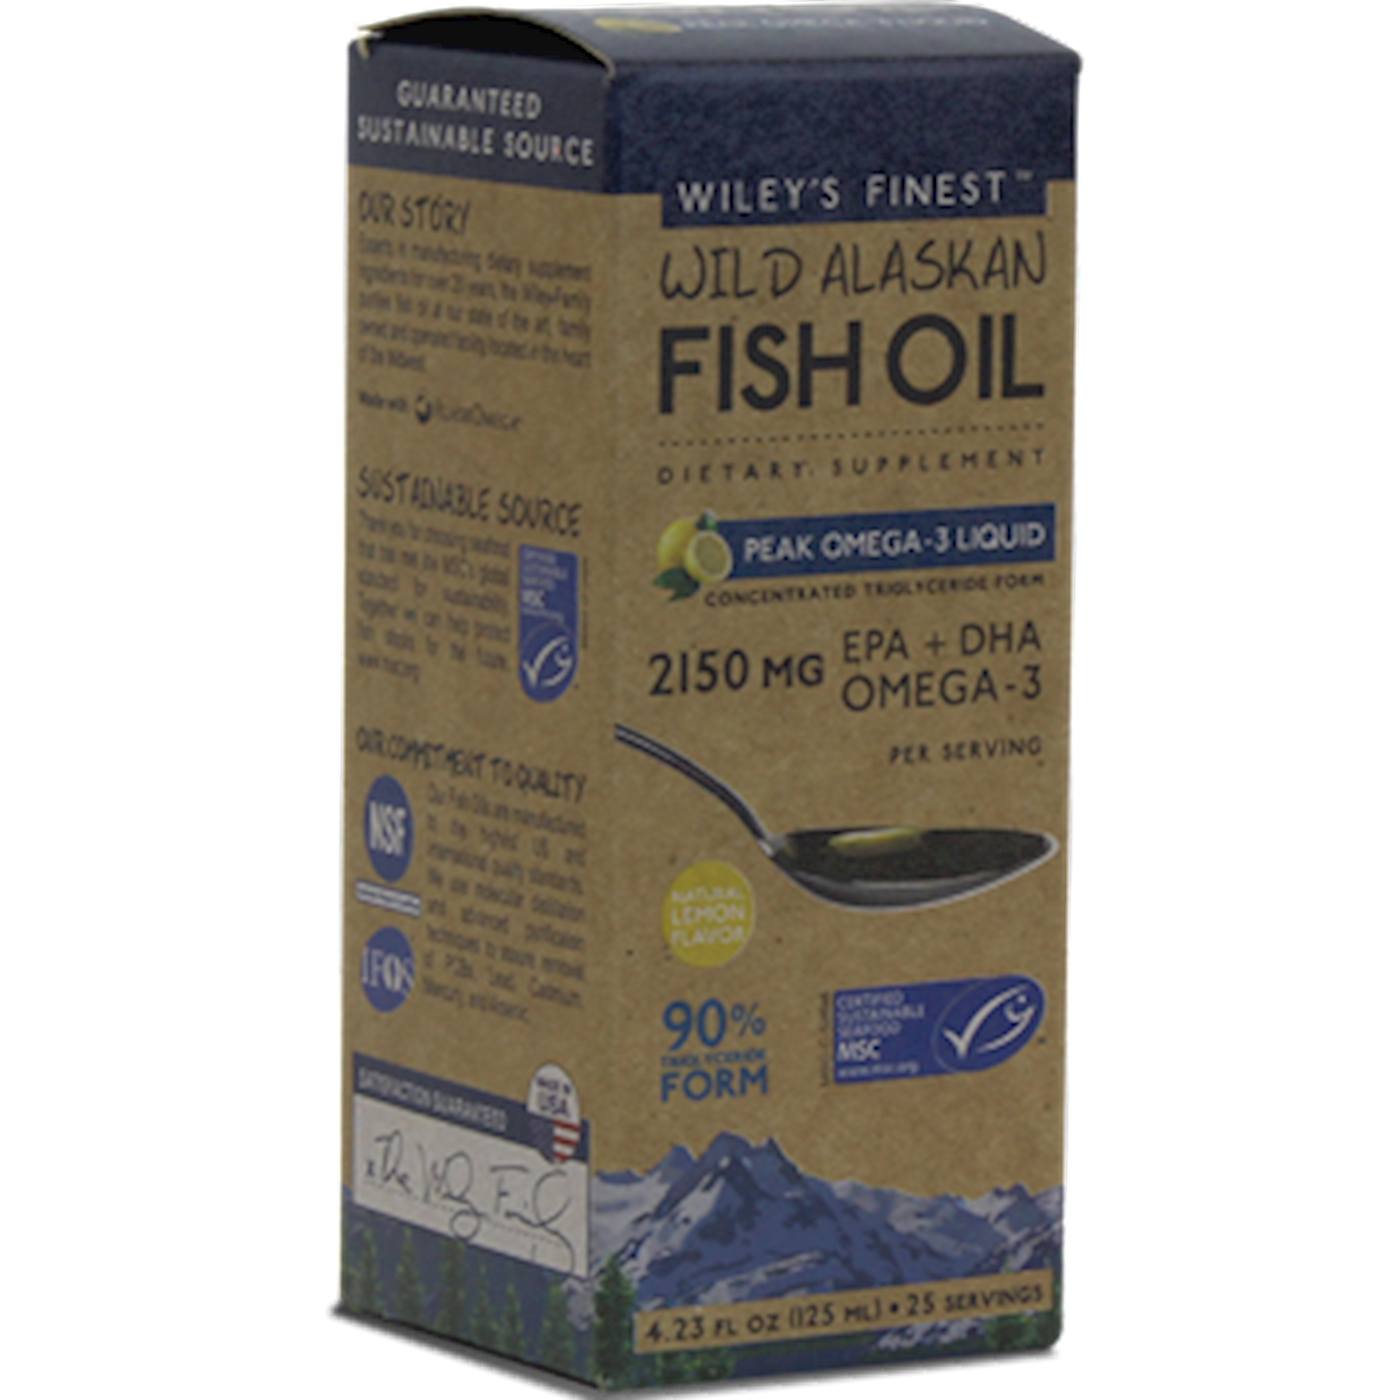 Wild Alaskan Peak Fish Oil 4.23 fl oz Curated Wellness